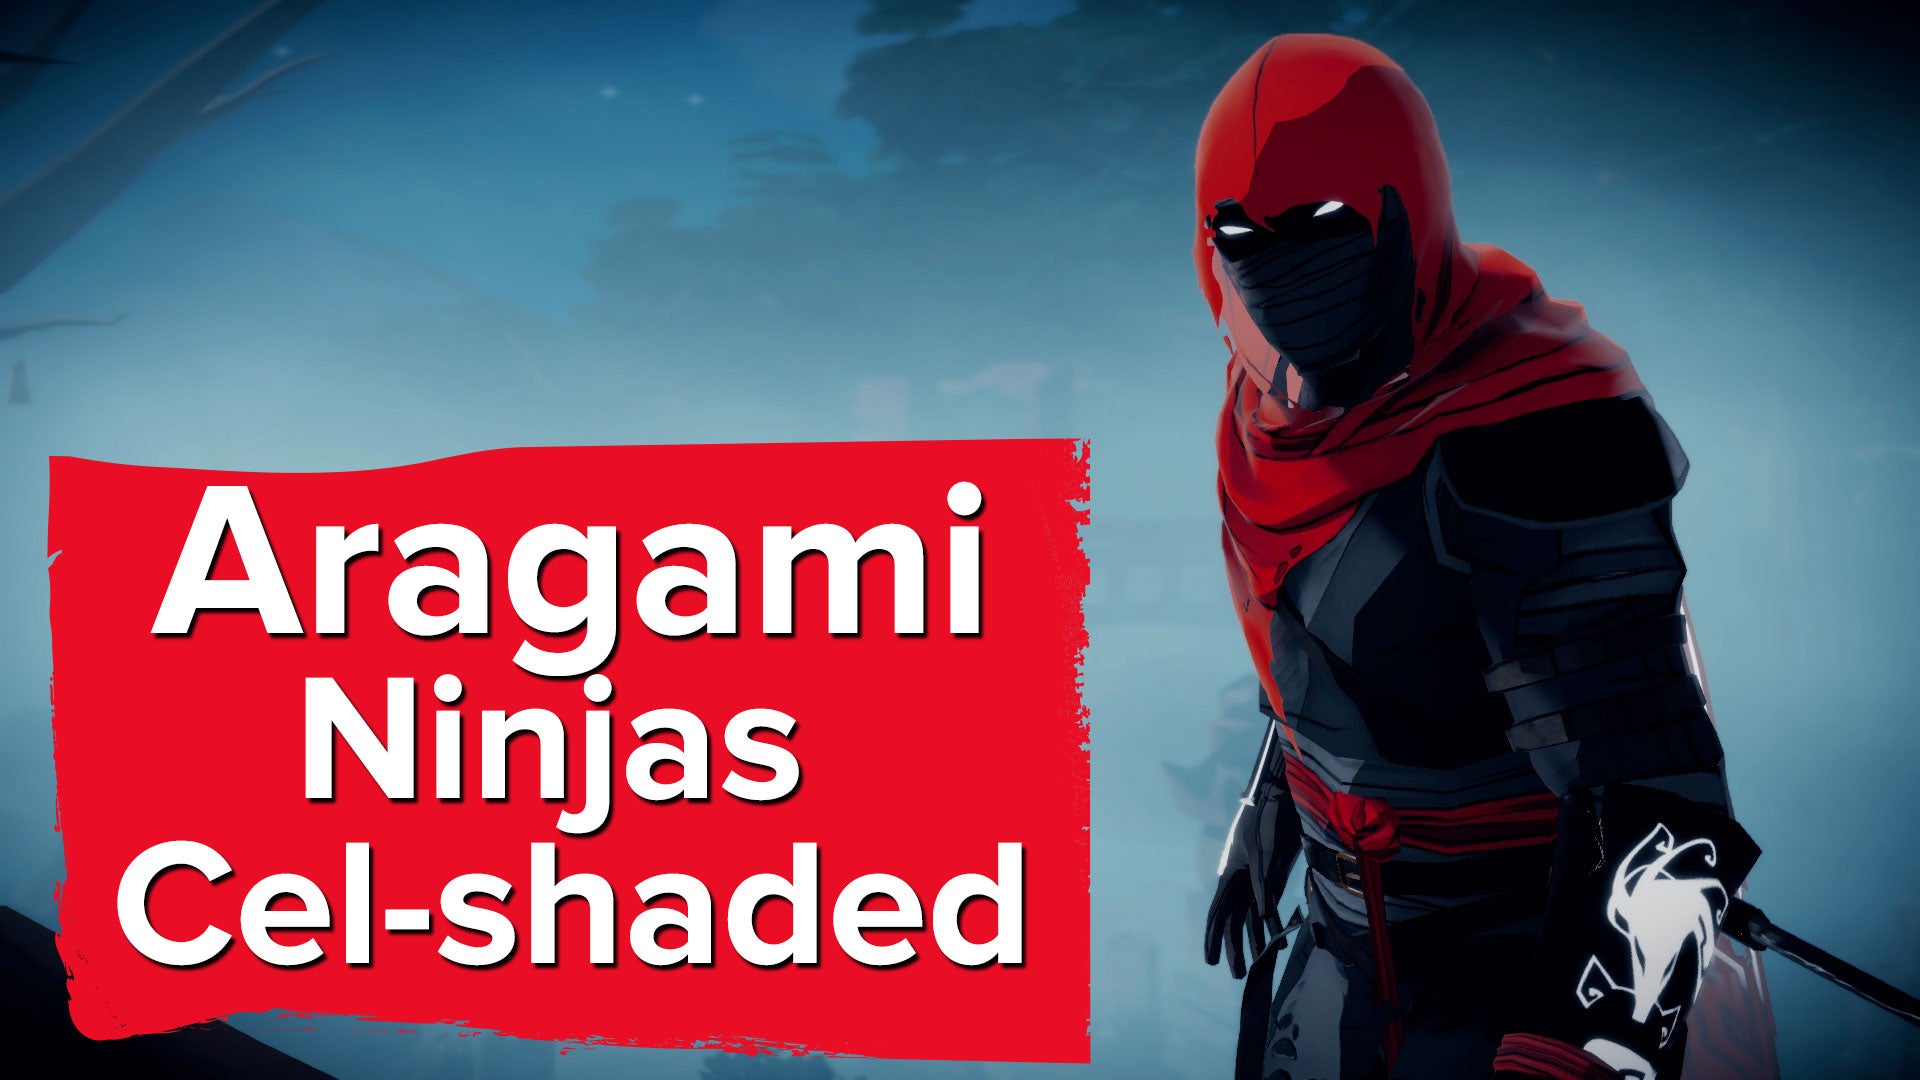 Imagem para Aragami - Ninjas em Cel-shaded